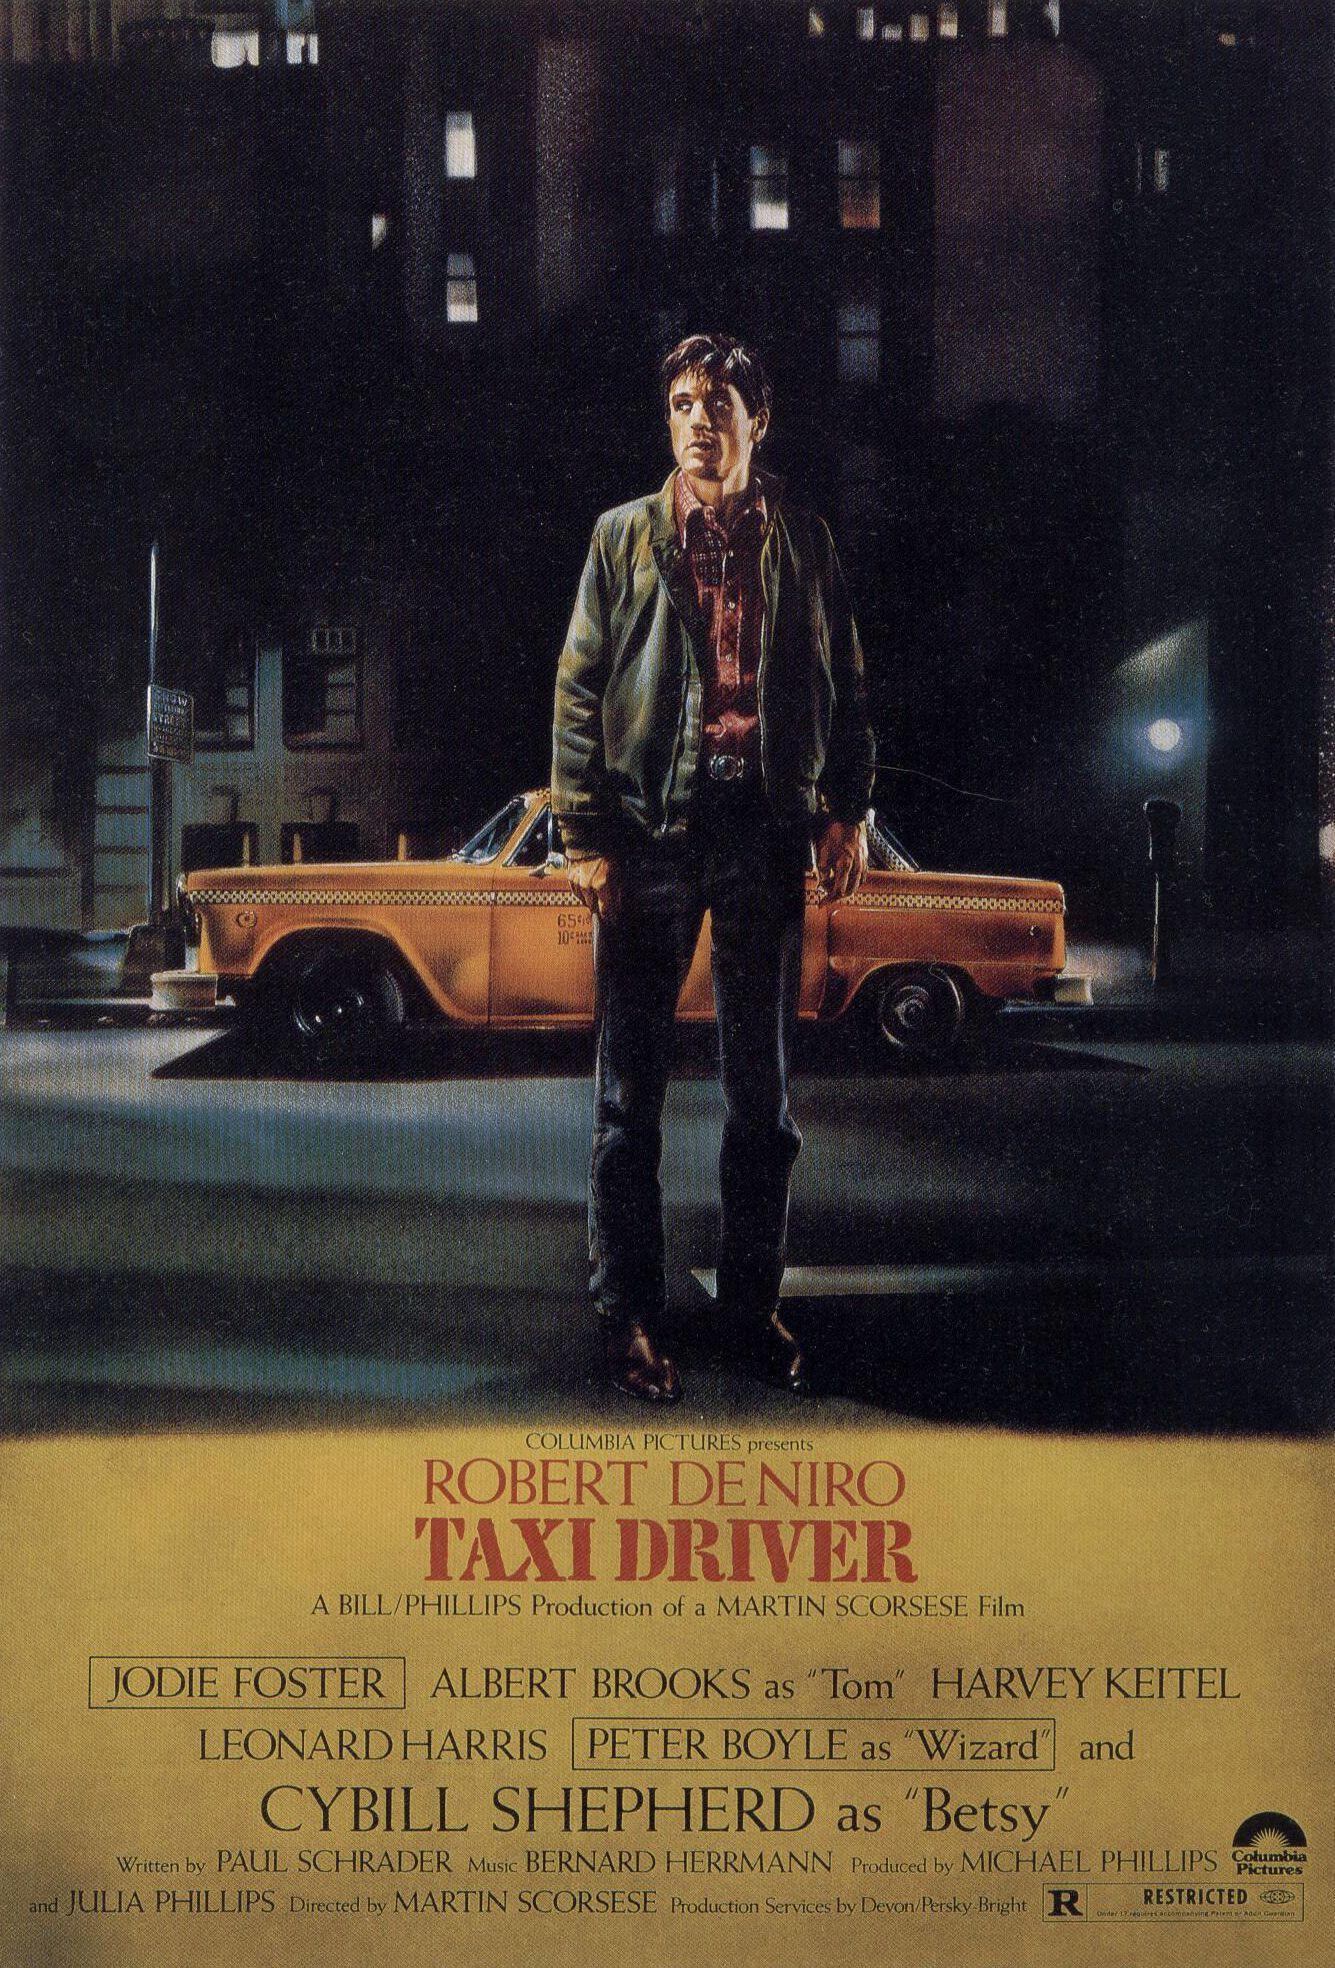 Taxi Driver, Robert De Niro, movie posters wallpaper